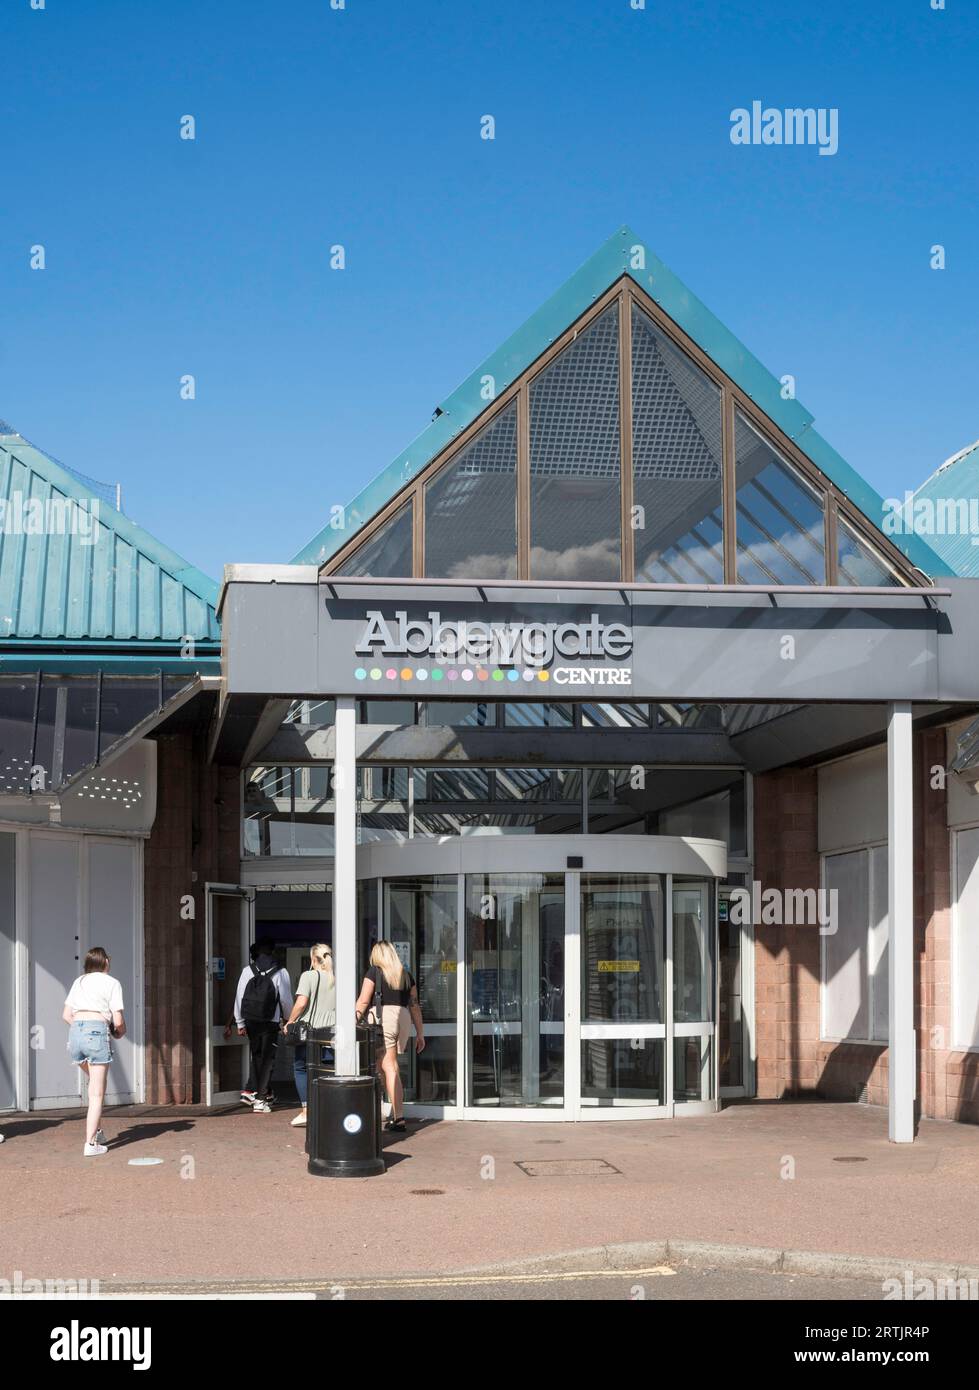 Acheteurs entrant dans le centre commercial Abbeygate à Arbroath, Angus, Écosse, Royaume-Uni Banque D'Images